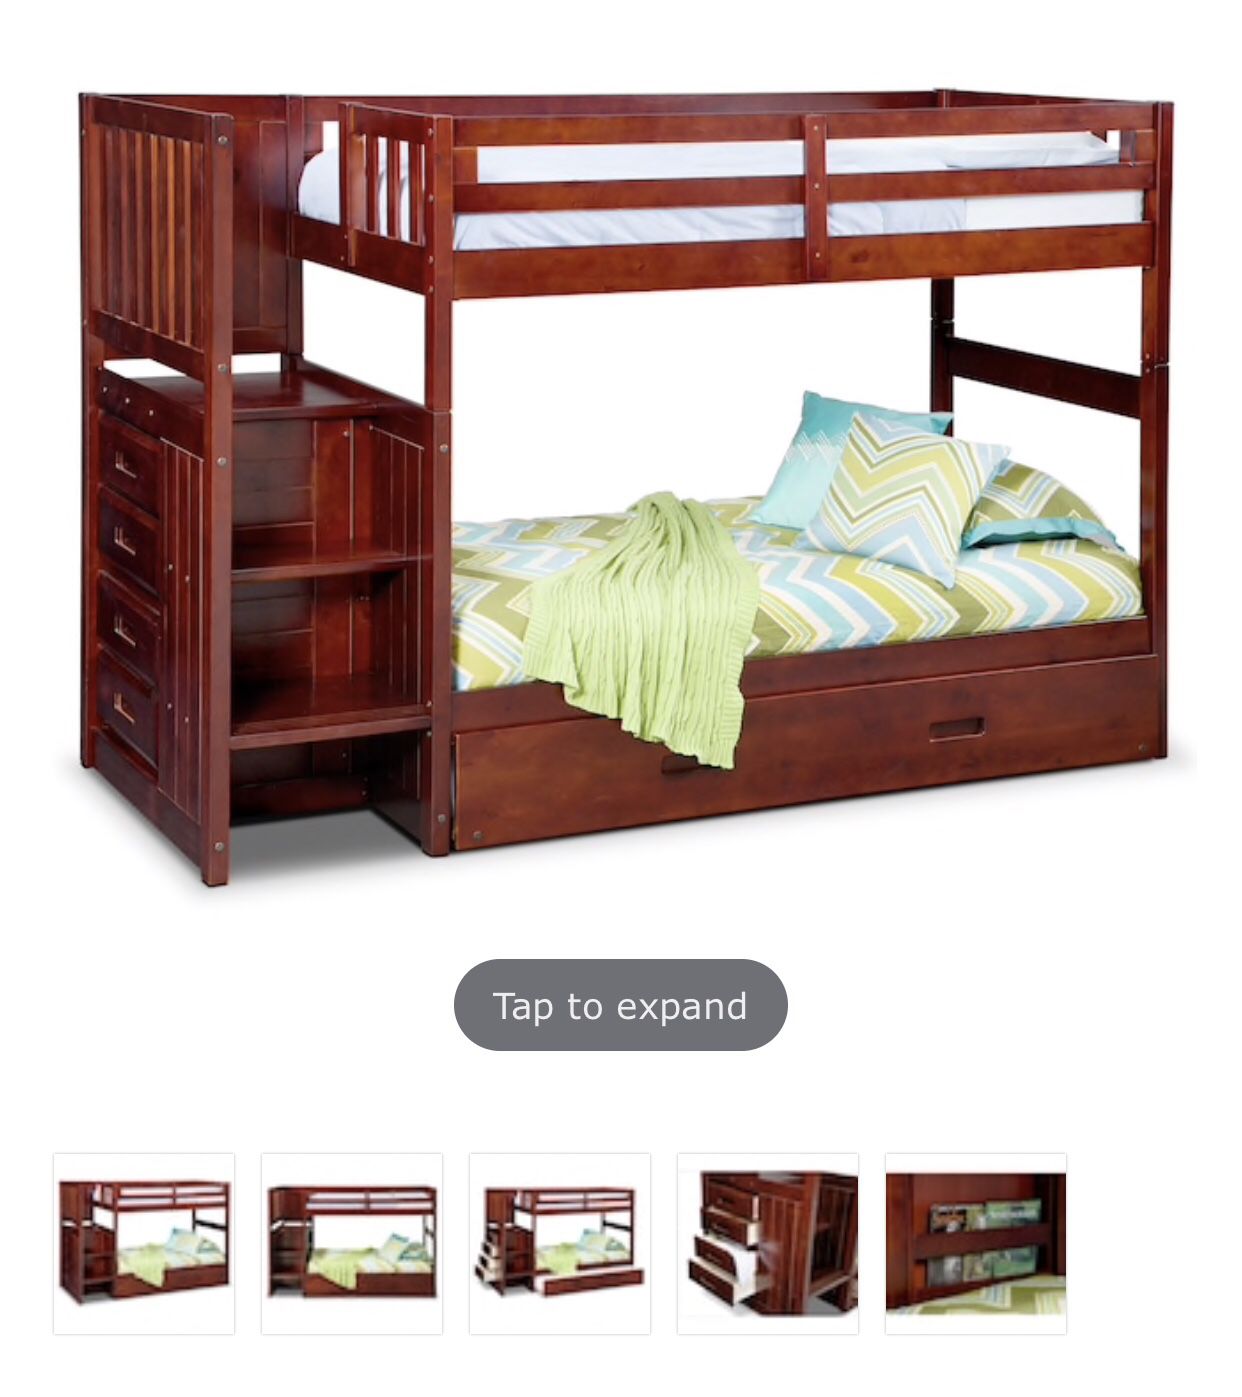 Twin bunk bed with storage. Cama doble con espacio para gualda ropa . Matress included